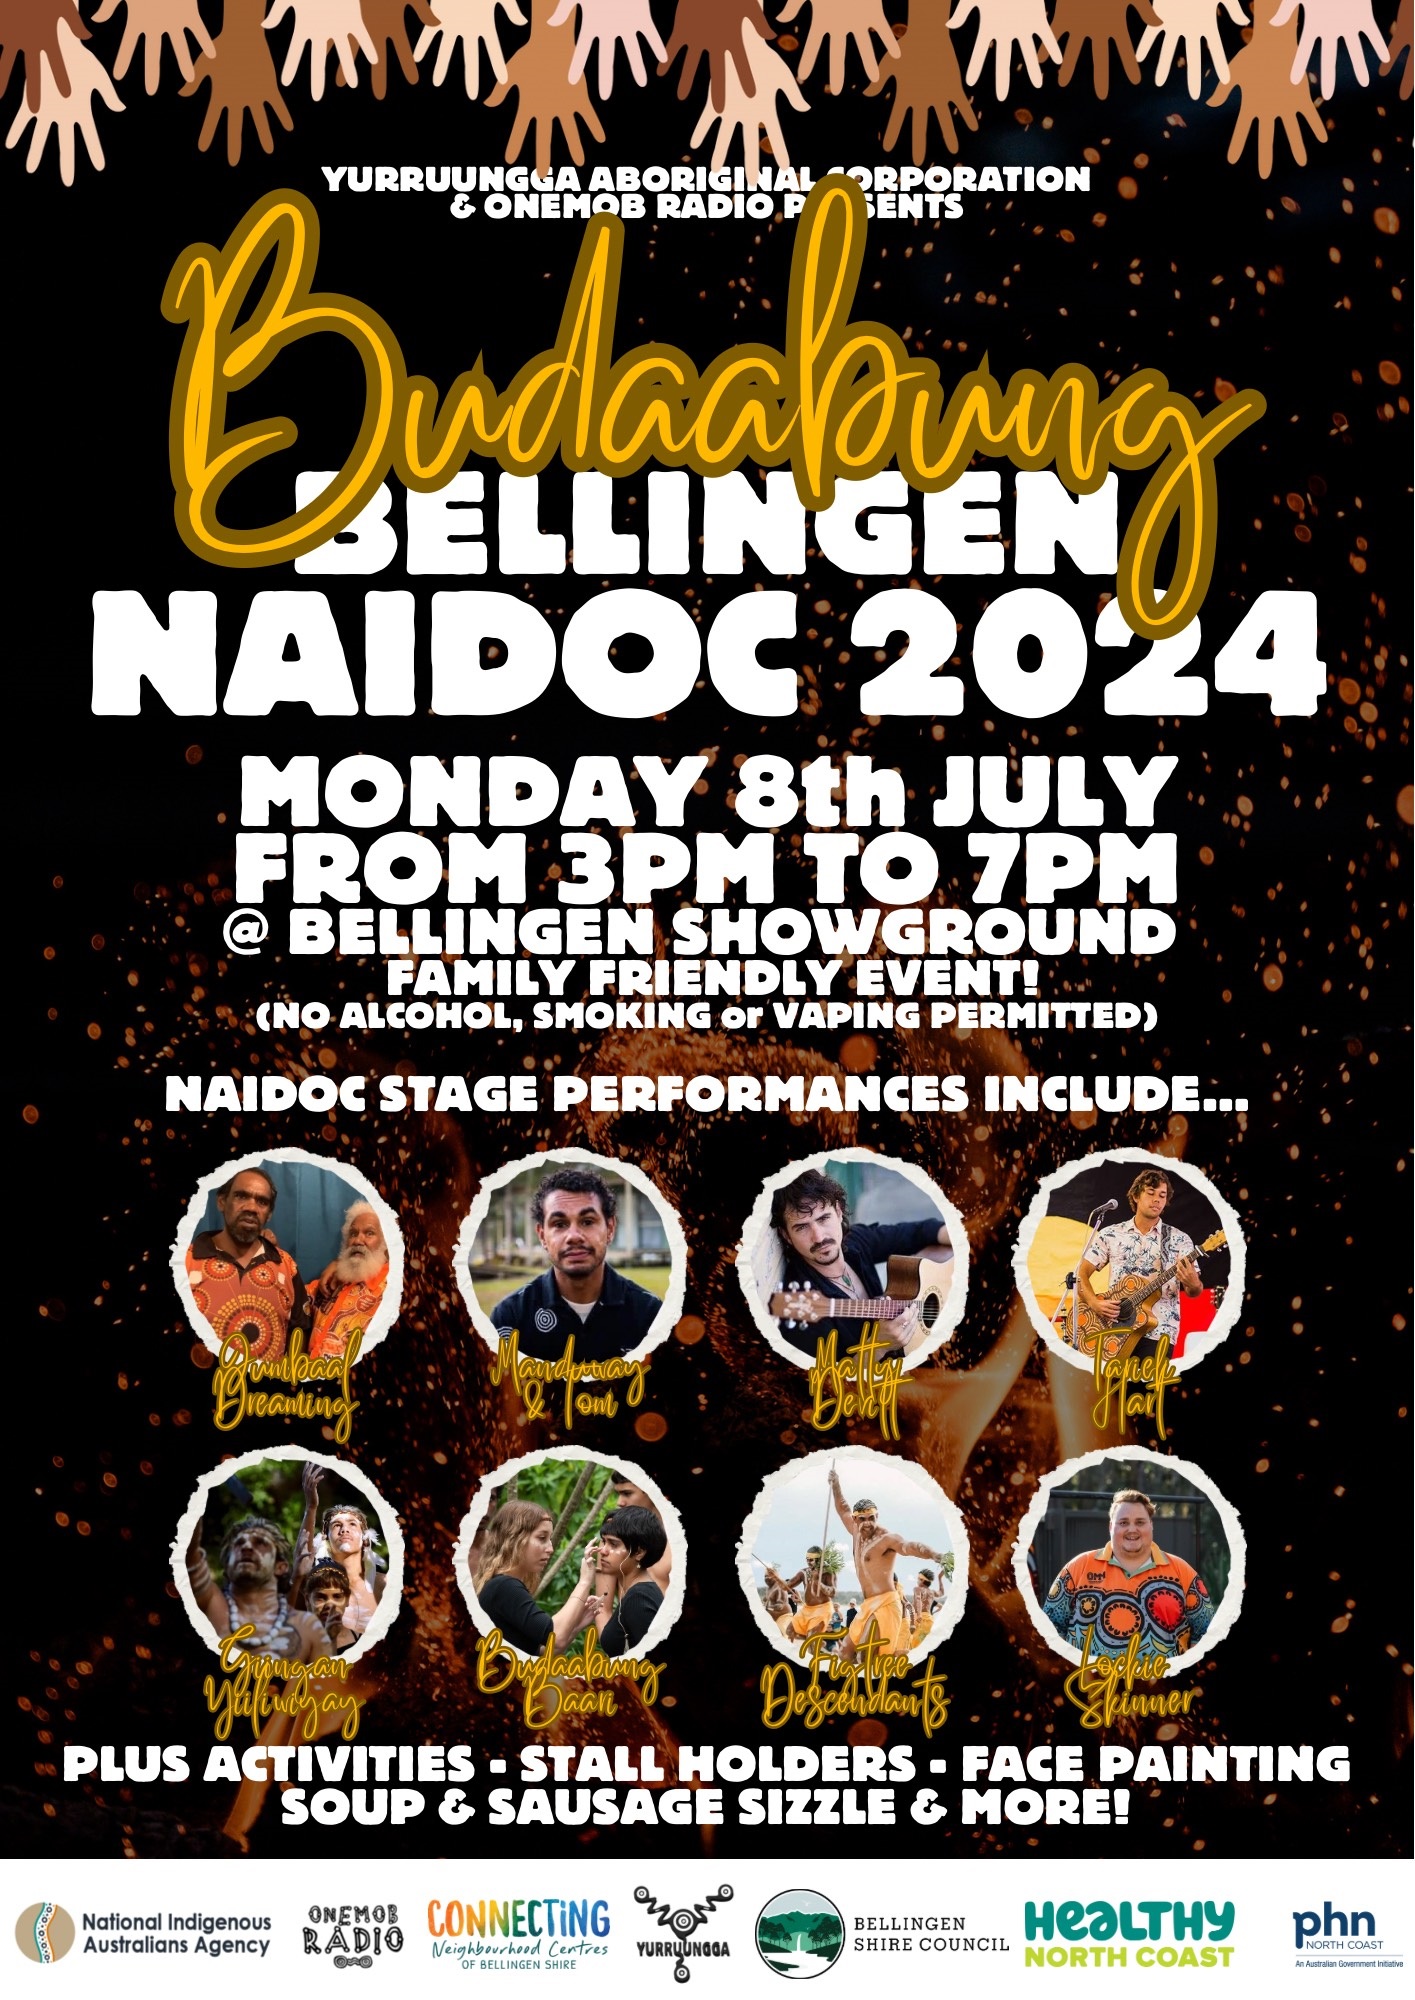 Budaabung-NAIDOC-2024-004.jpg